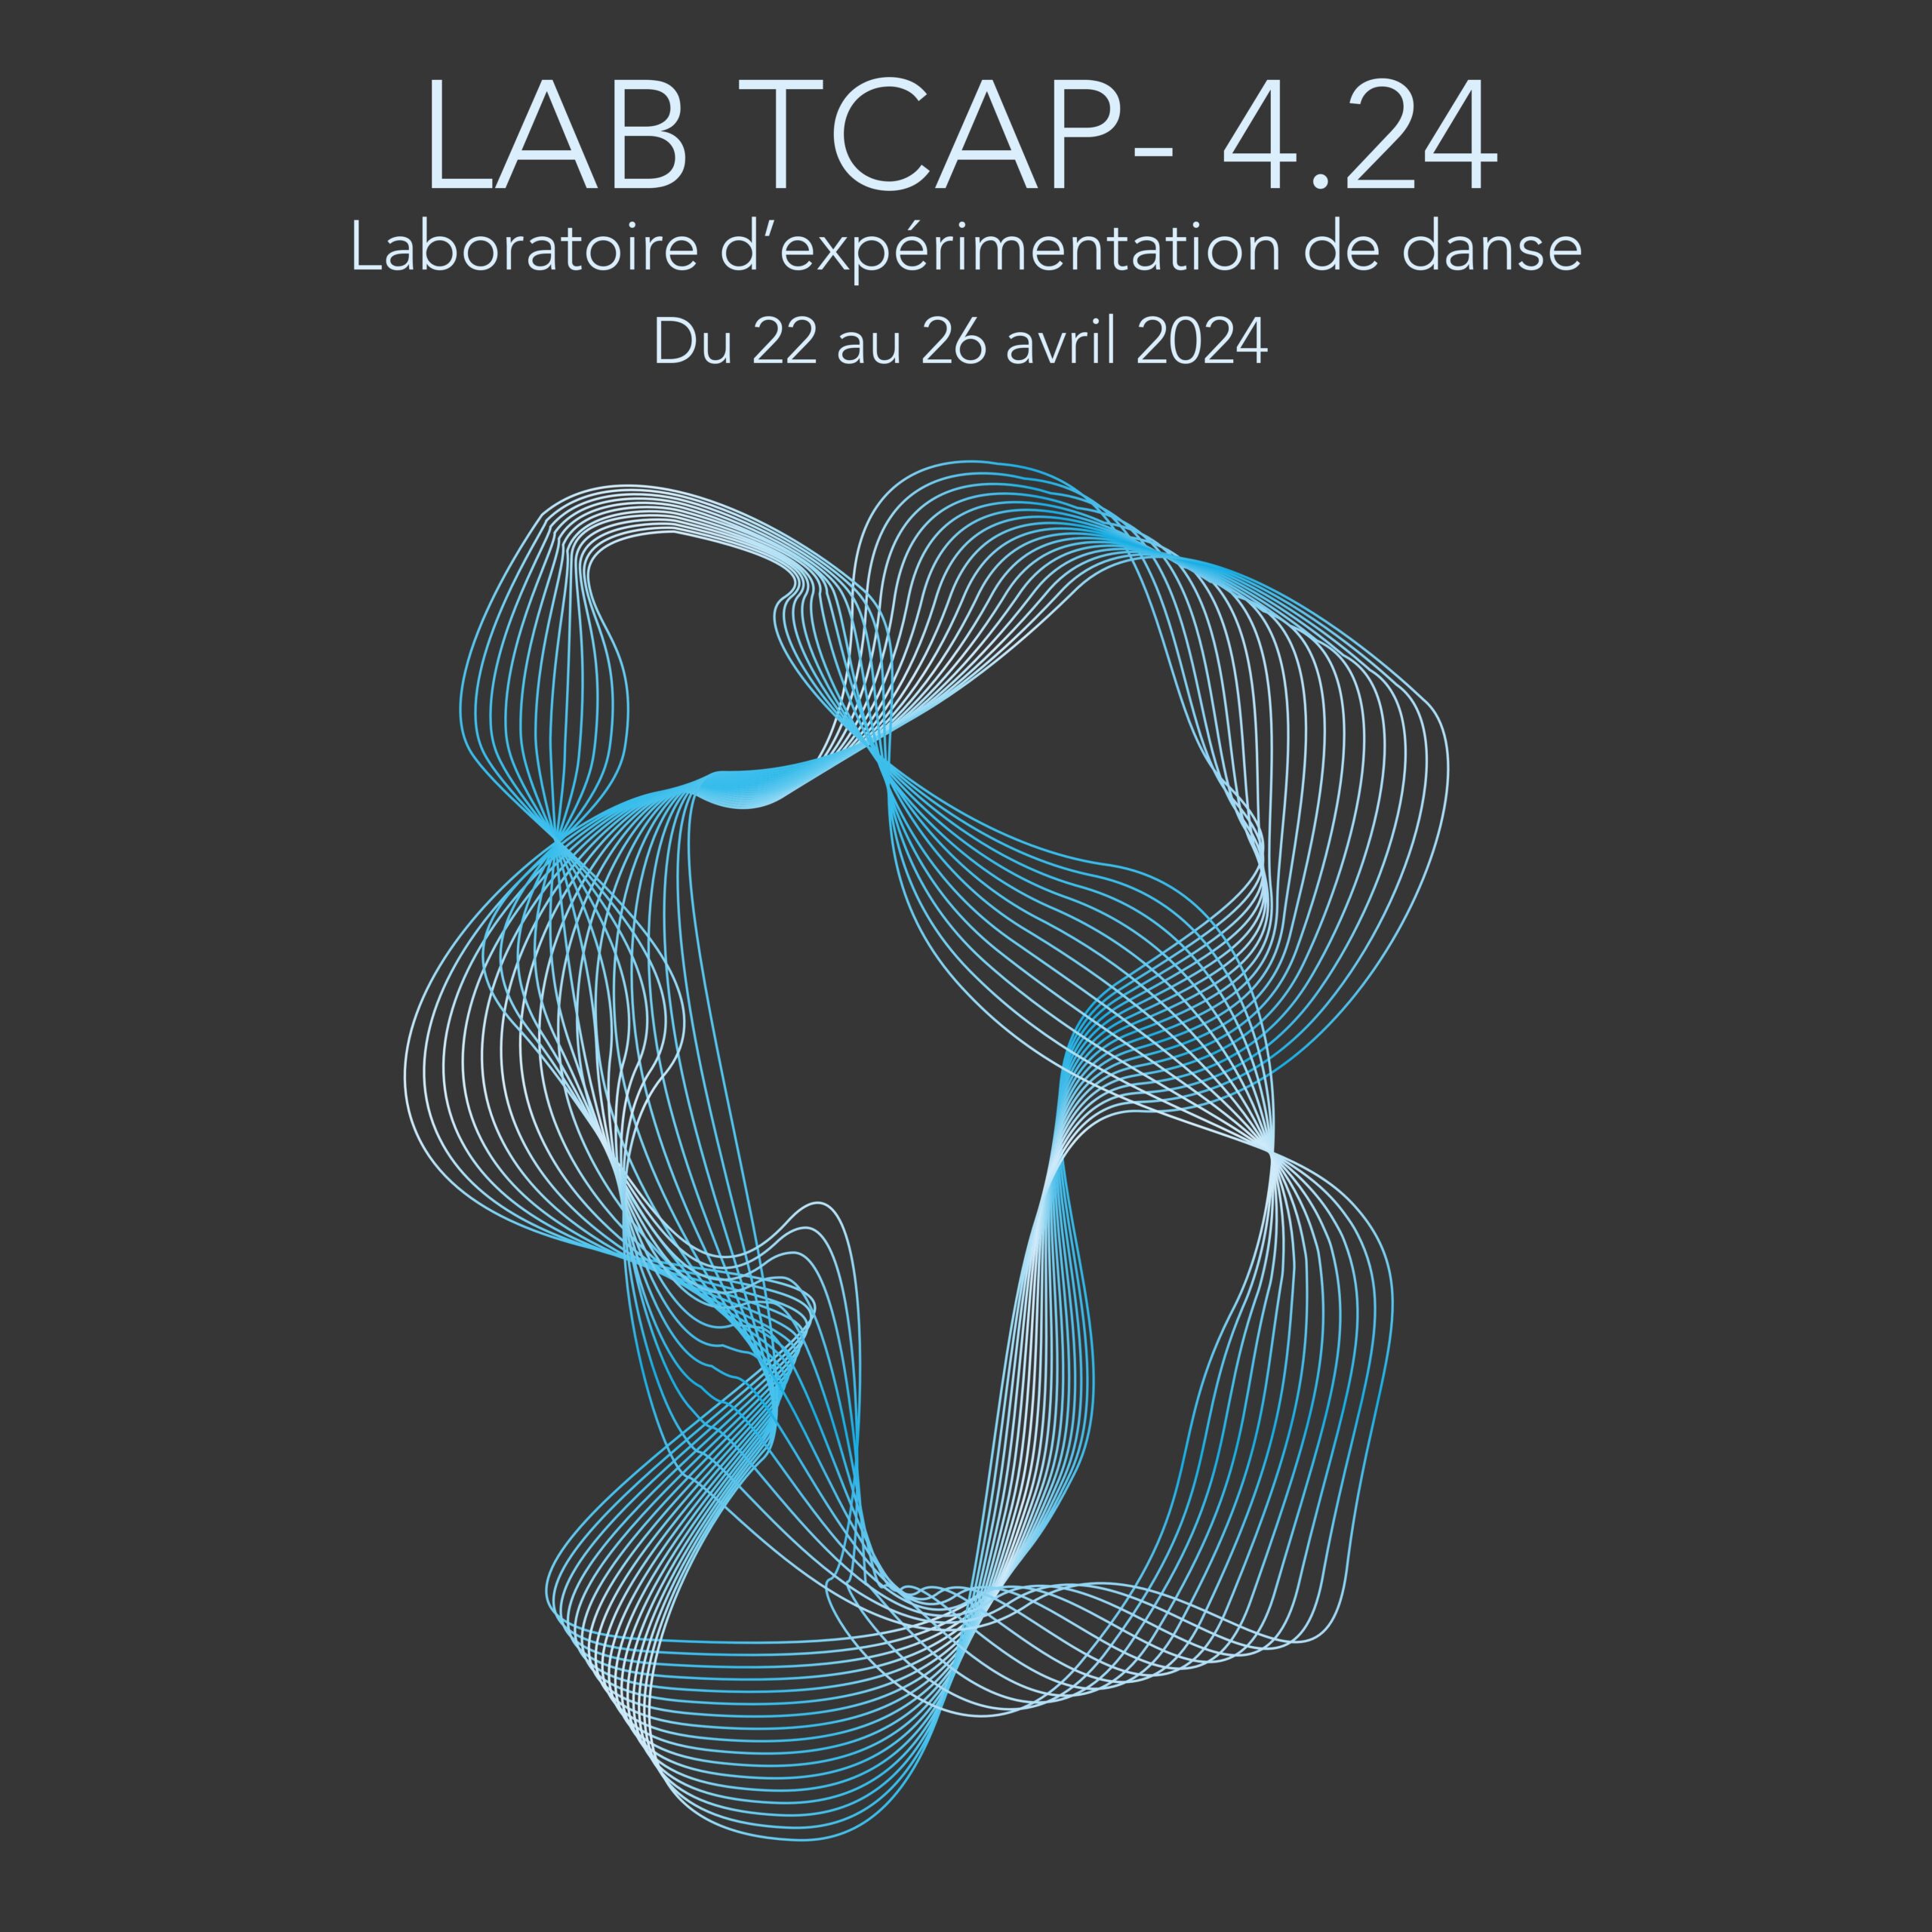 LAB TCAP – 4.24 : Laboratoire d’expérimentation de danse